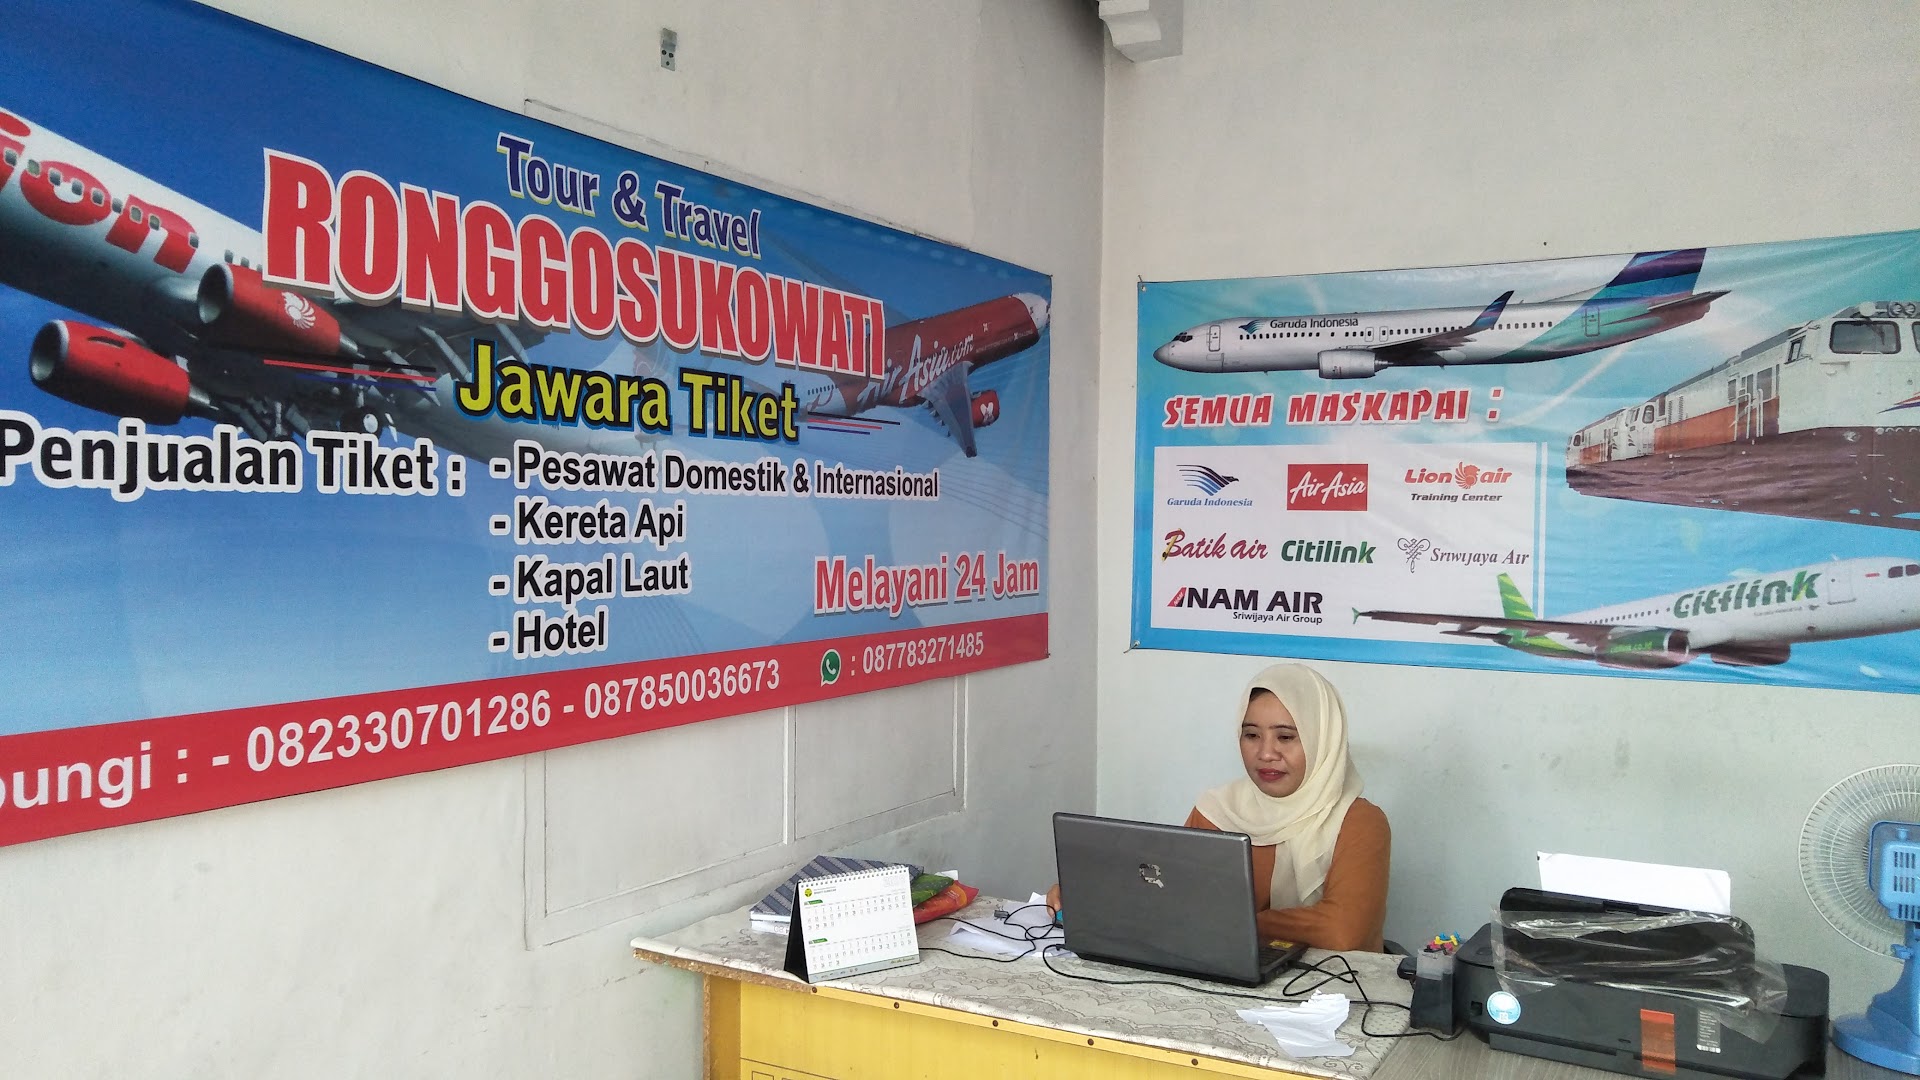 Gambar Tiket Pesawat Ronggosukowati Jawara